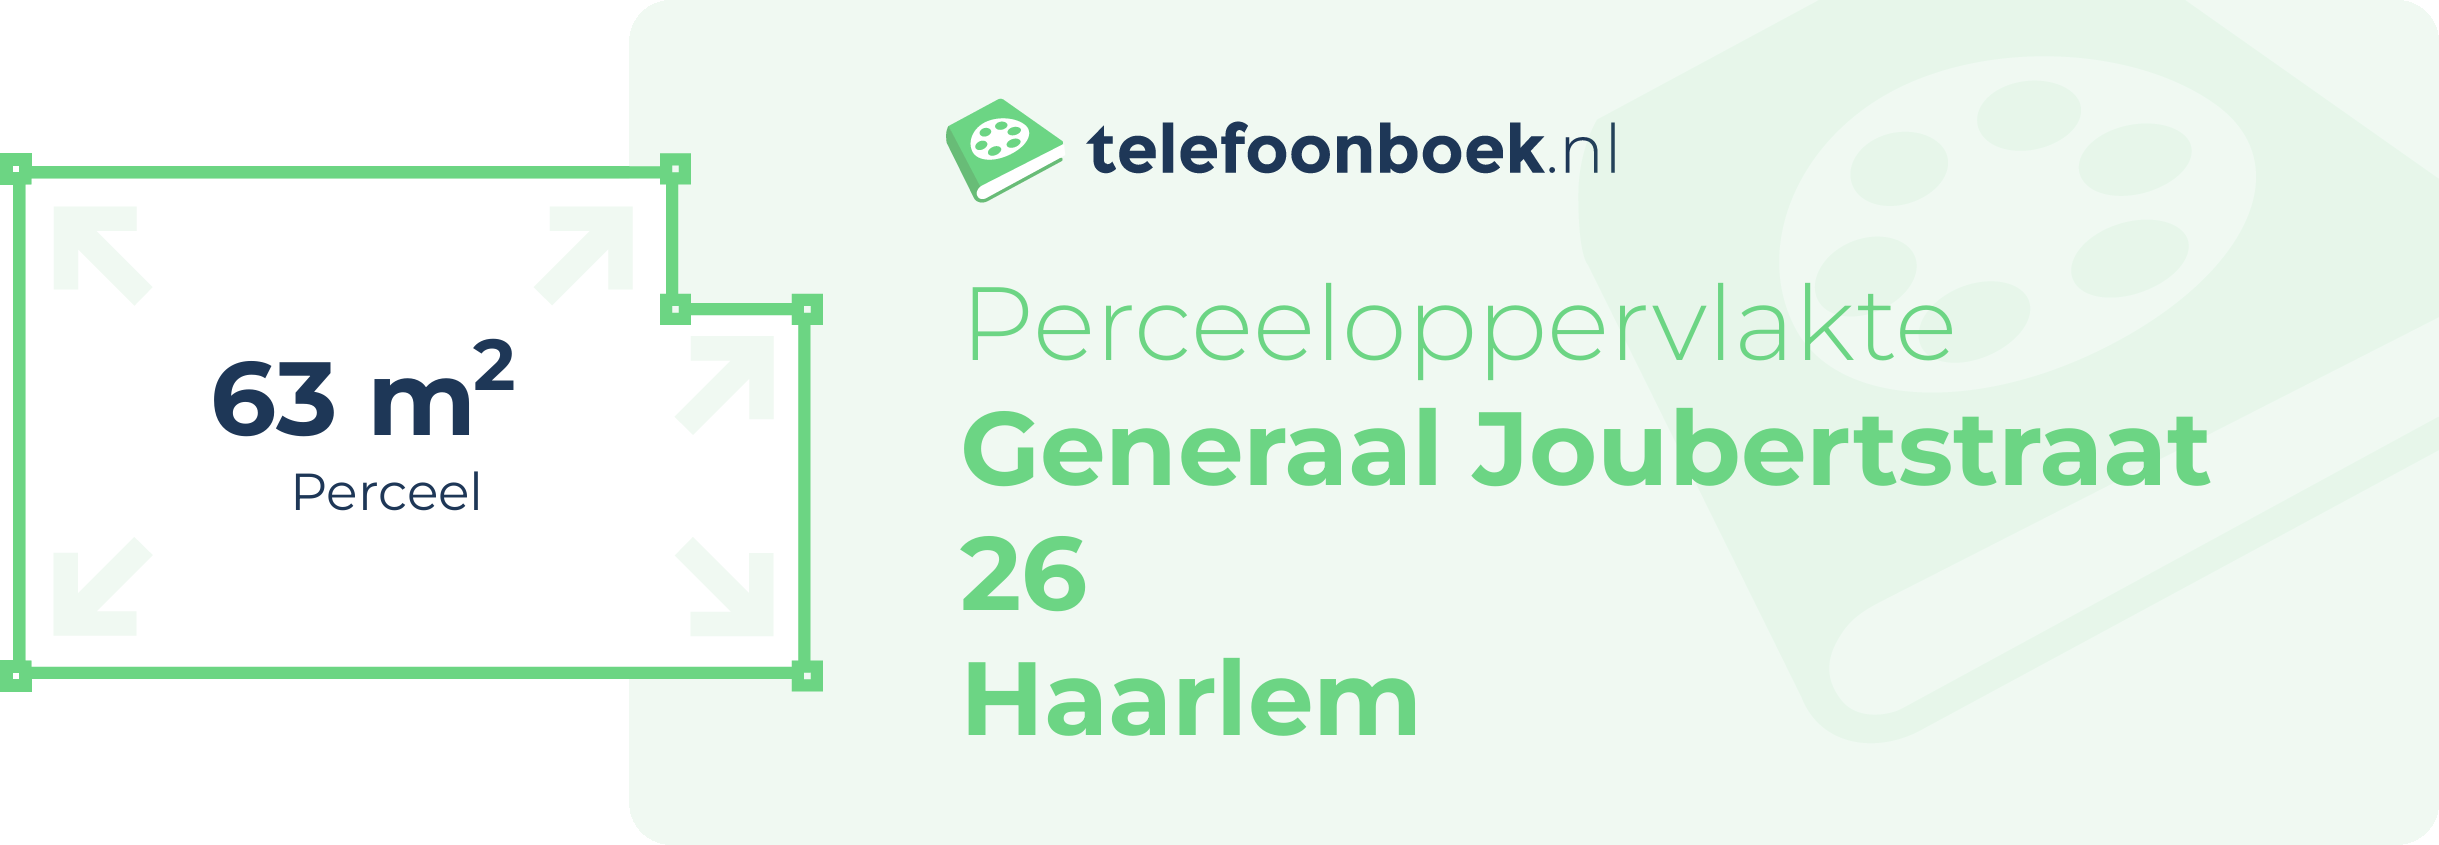 Perceeloppervlakte Generaal Joubertstraat 26 Haarlem